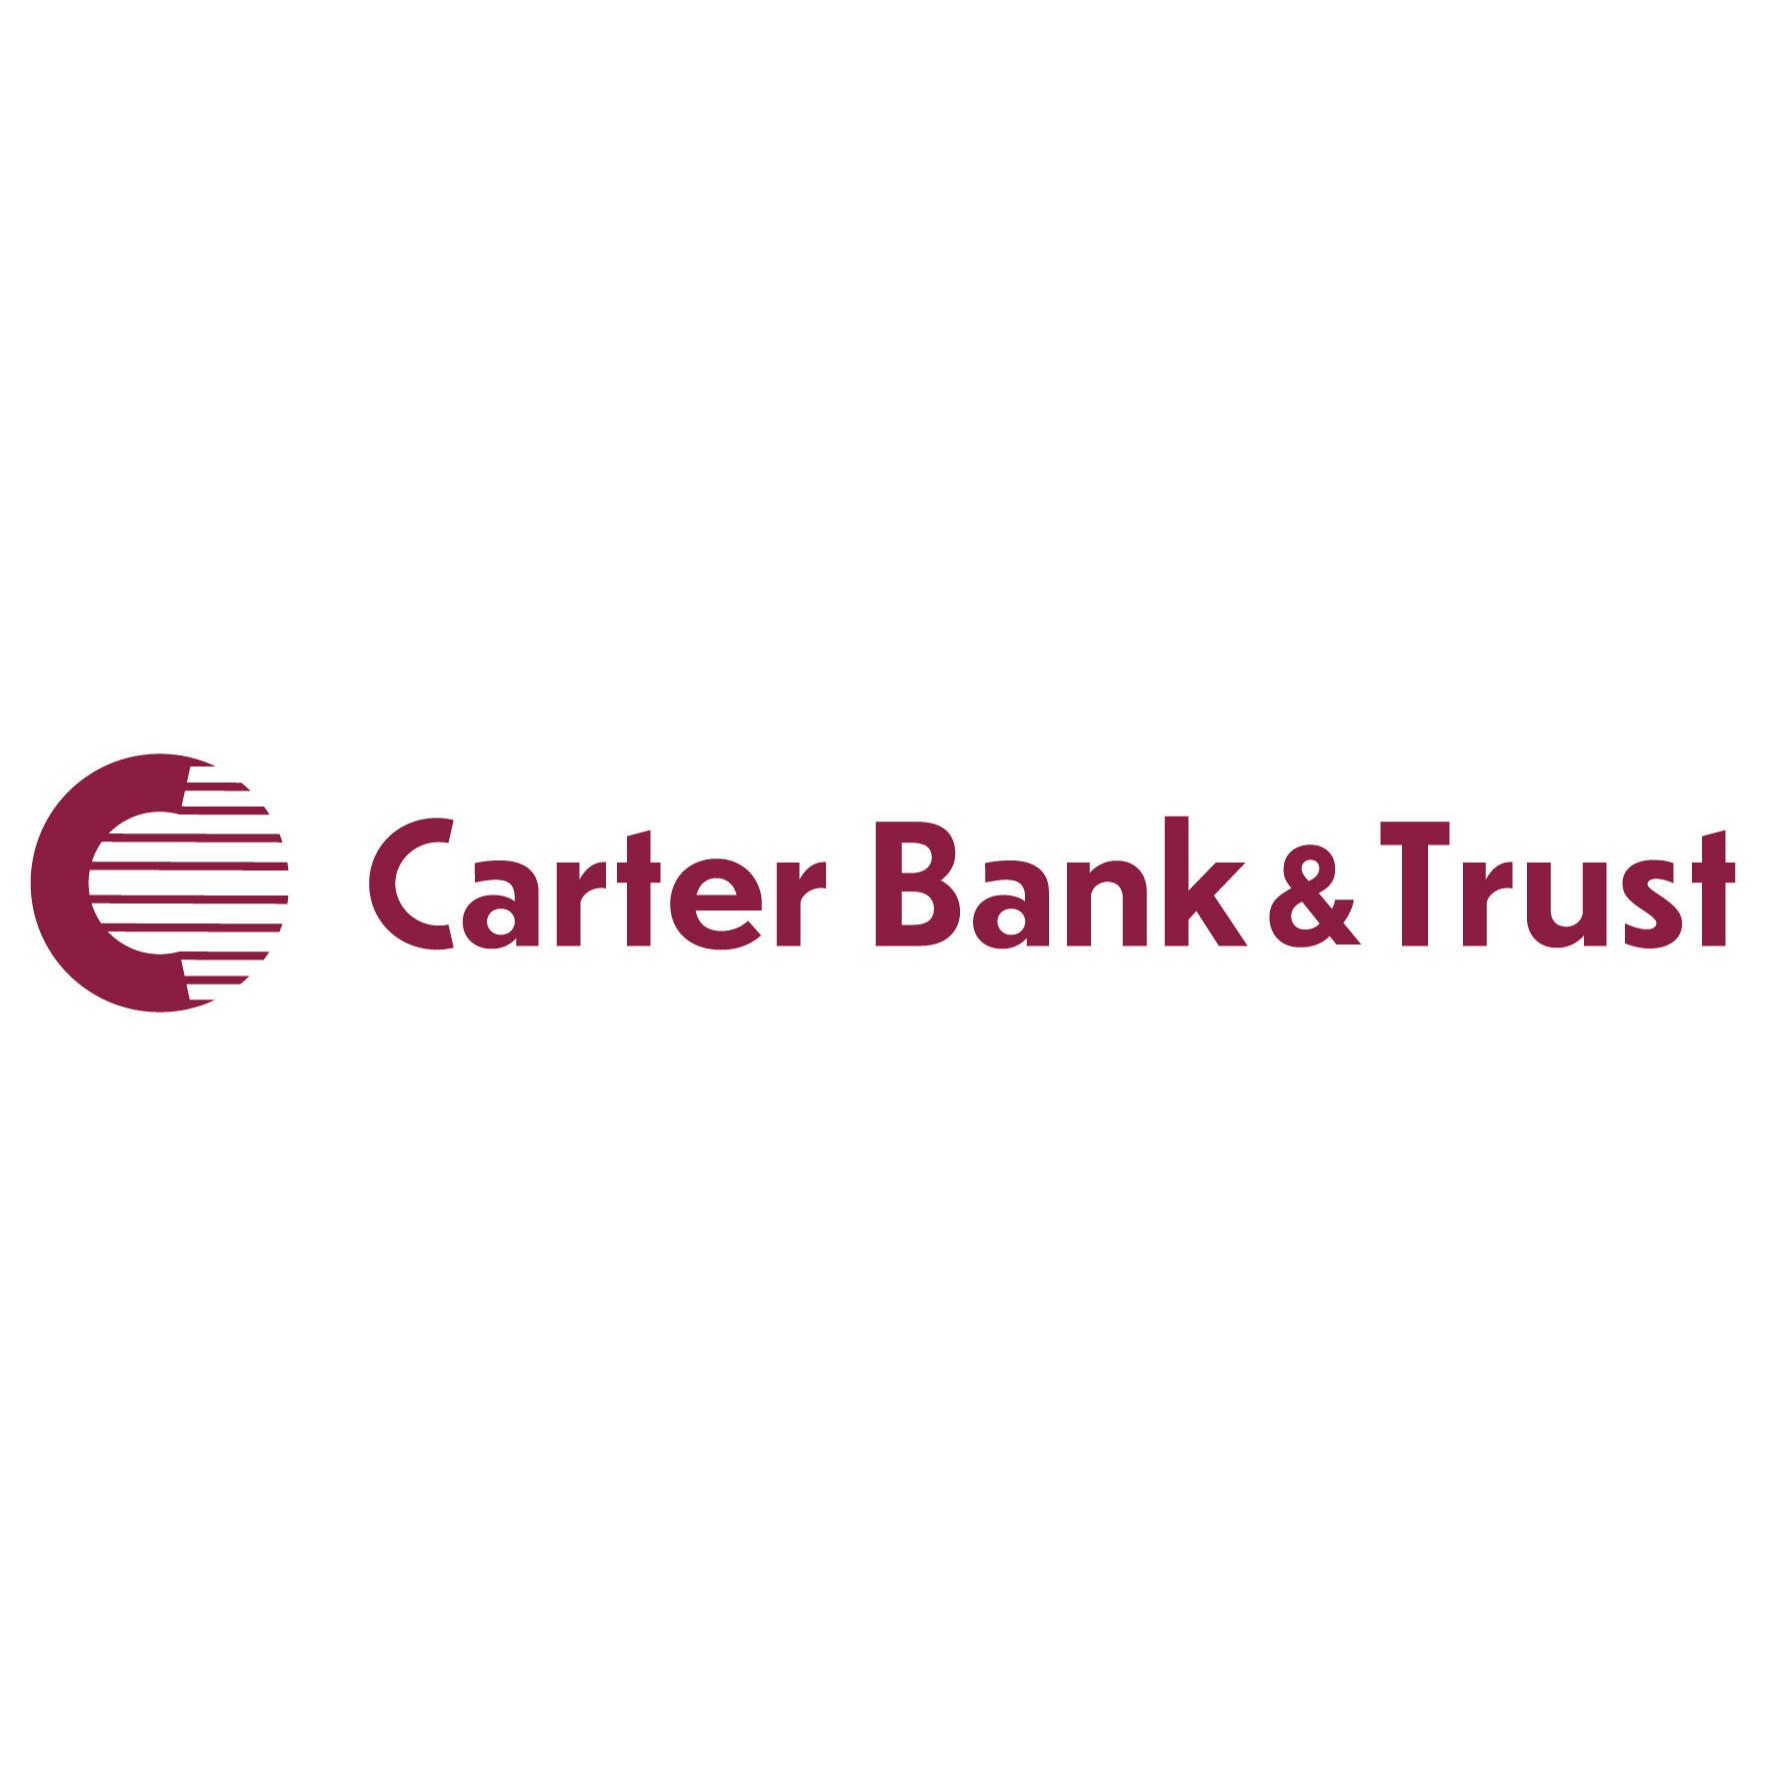 Carter Bank & Trust - Danville, VA 24541 - (434)793-3321 | ShowMeLocal.com